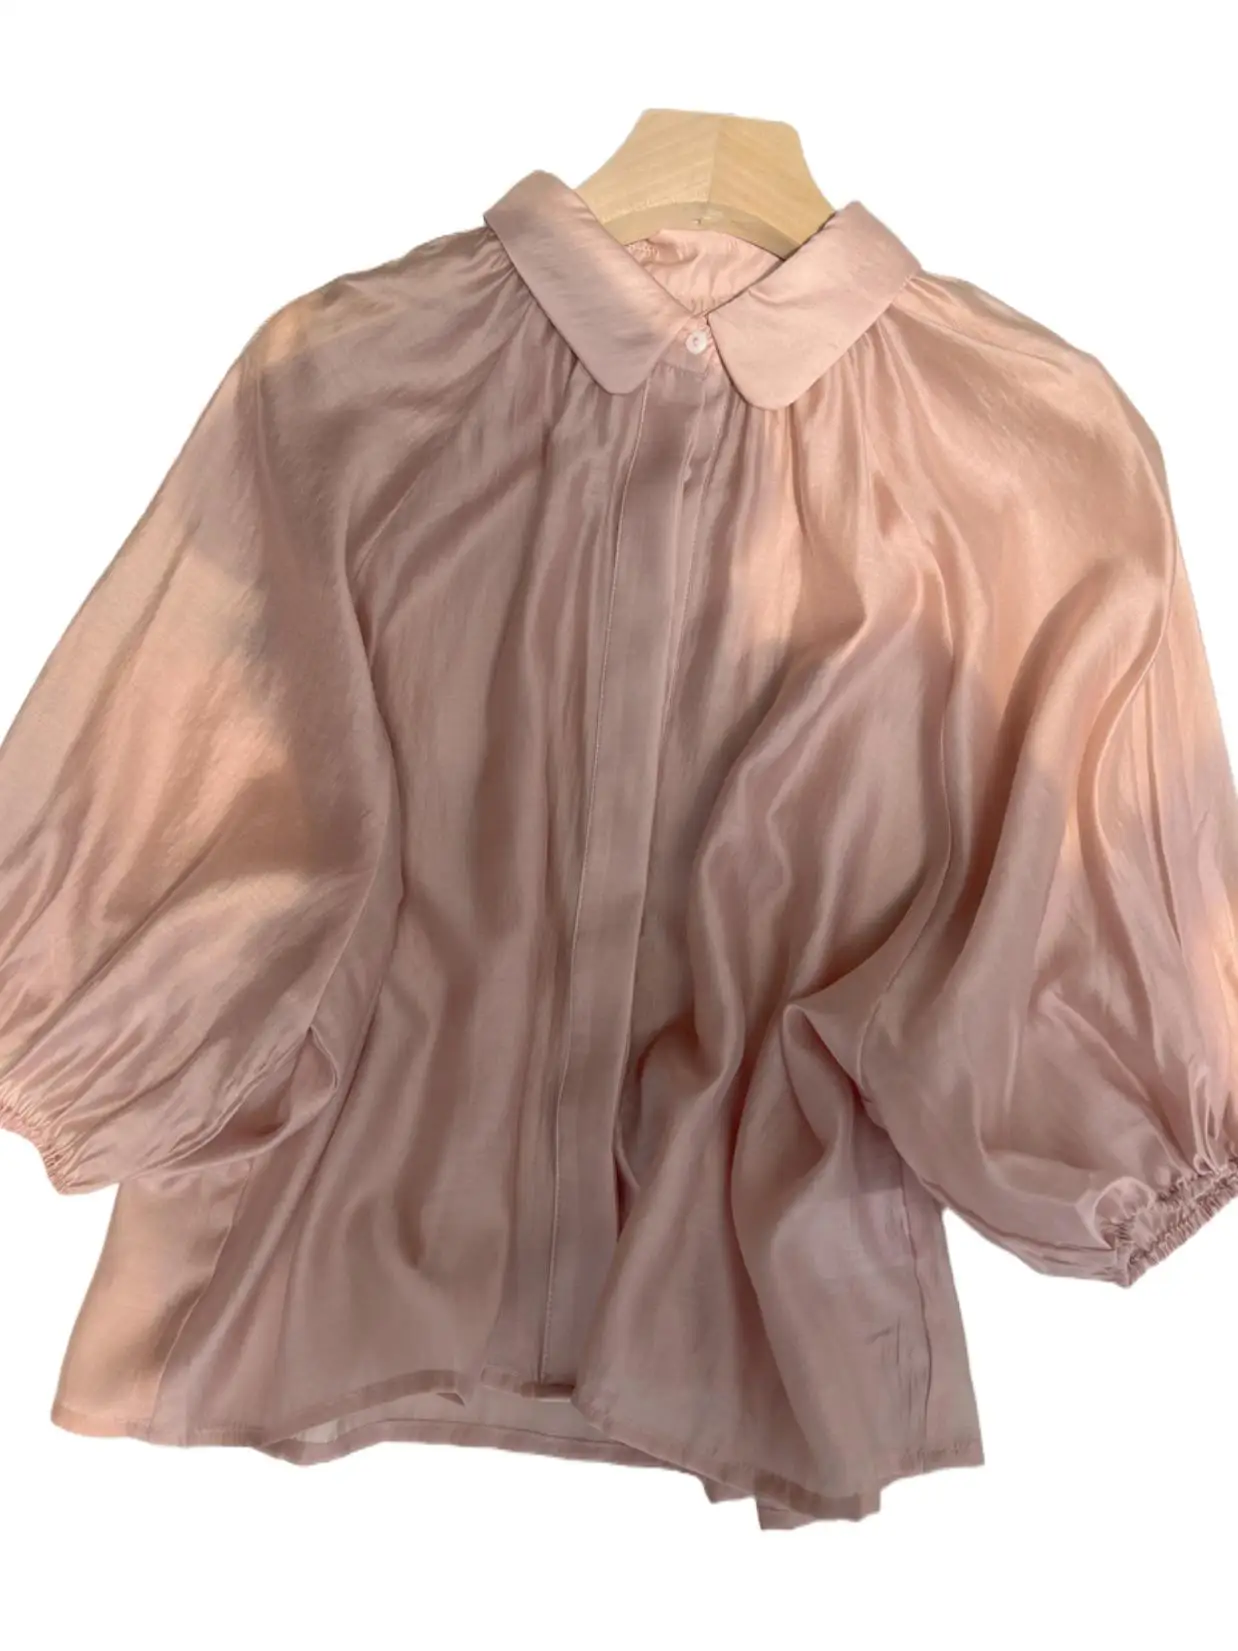 

Блузка женская из вискозы, рубашка с отложным воротником, рукав три четверти, свободного кроя, универсальная базовая уютная гладкая, розовая, весна